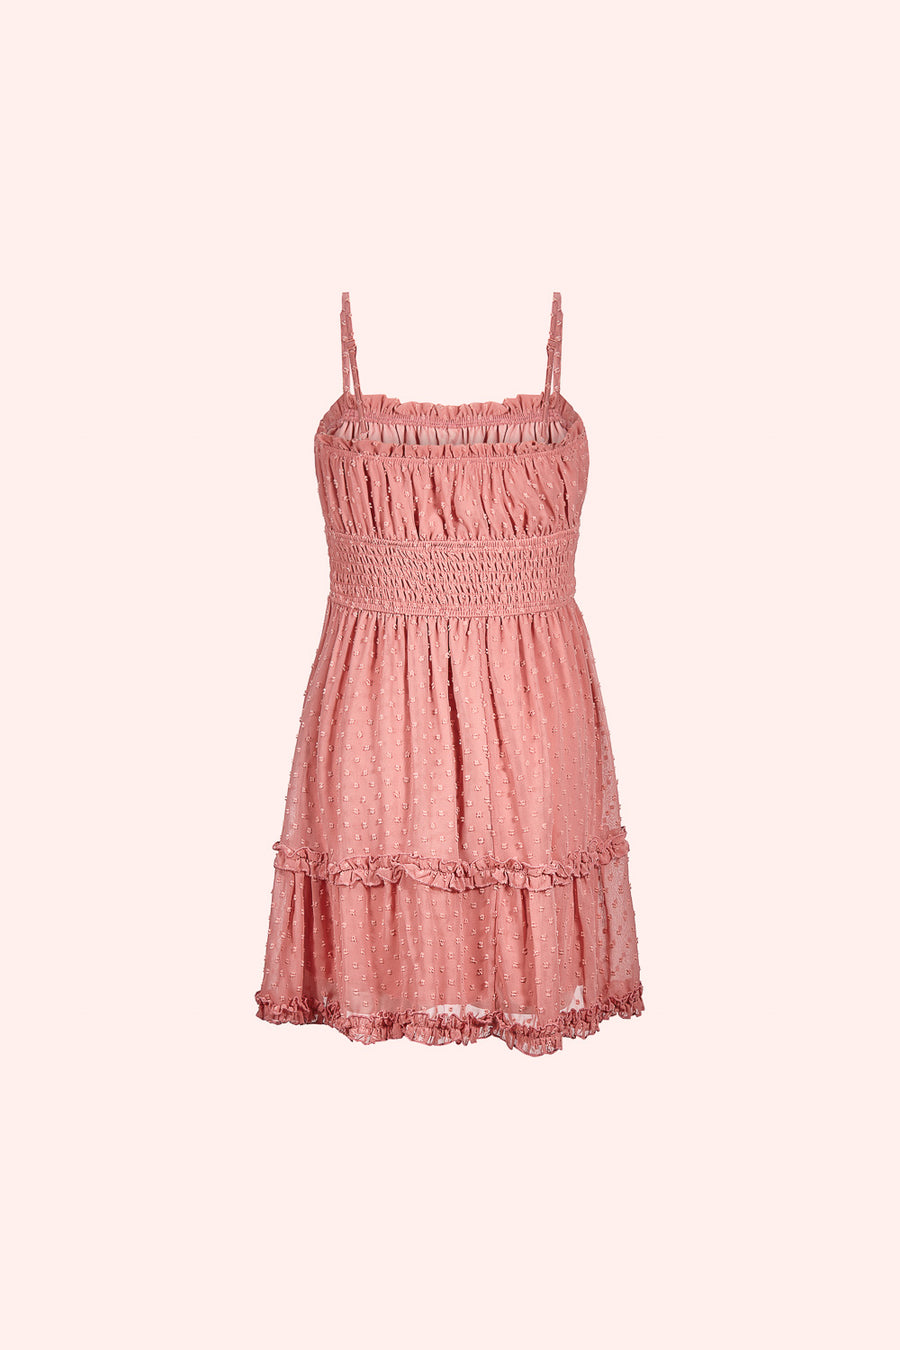 Dusty Rose Smocked Dress - Trixxi Clothing